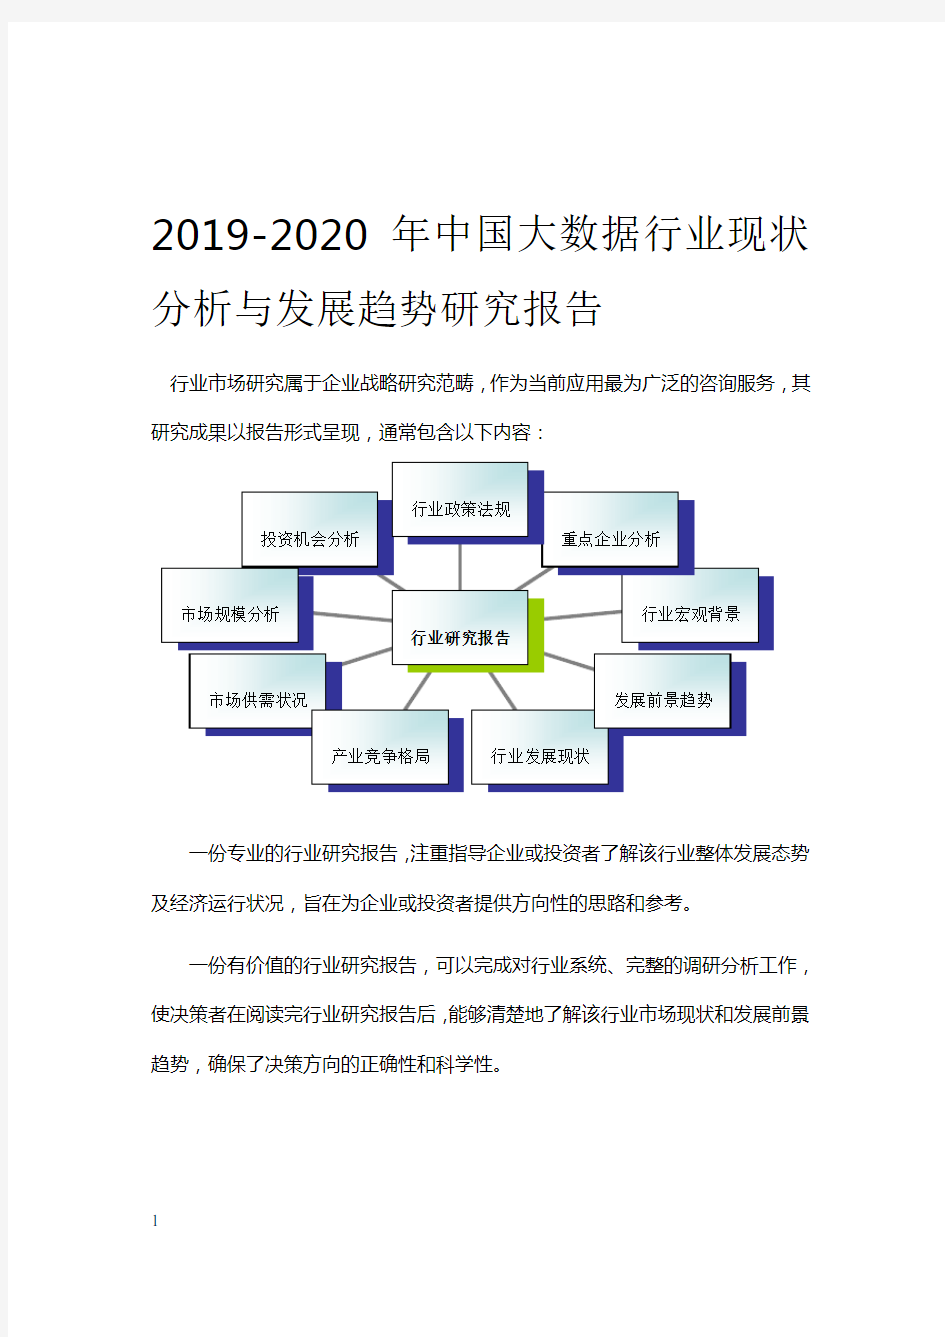 2019-2020年中国大数据行业现状分析与发展趋势研究报告